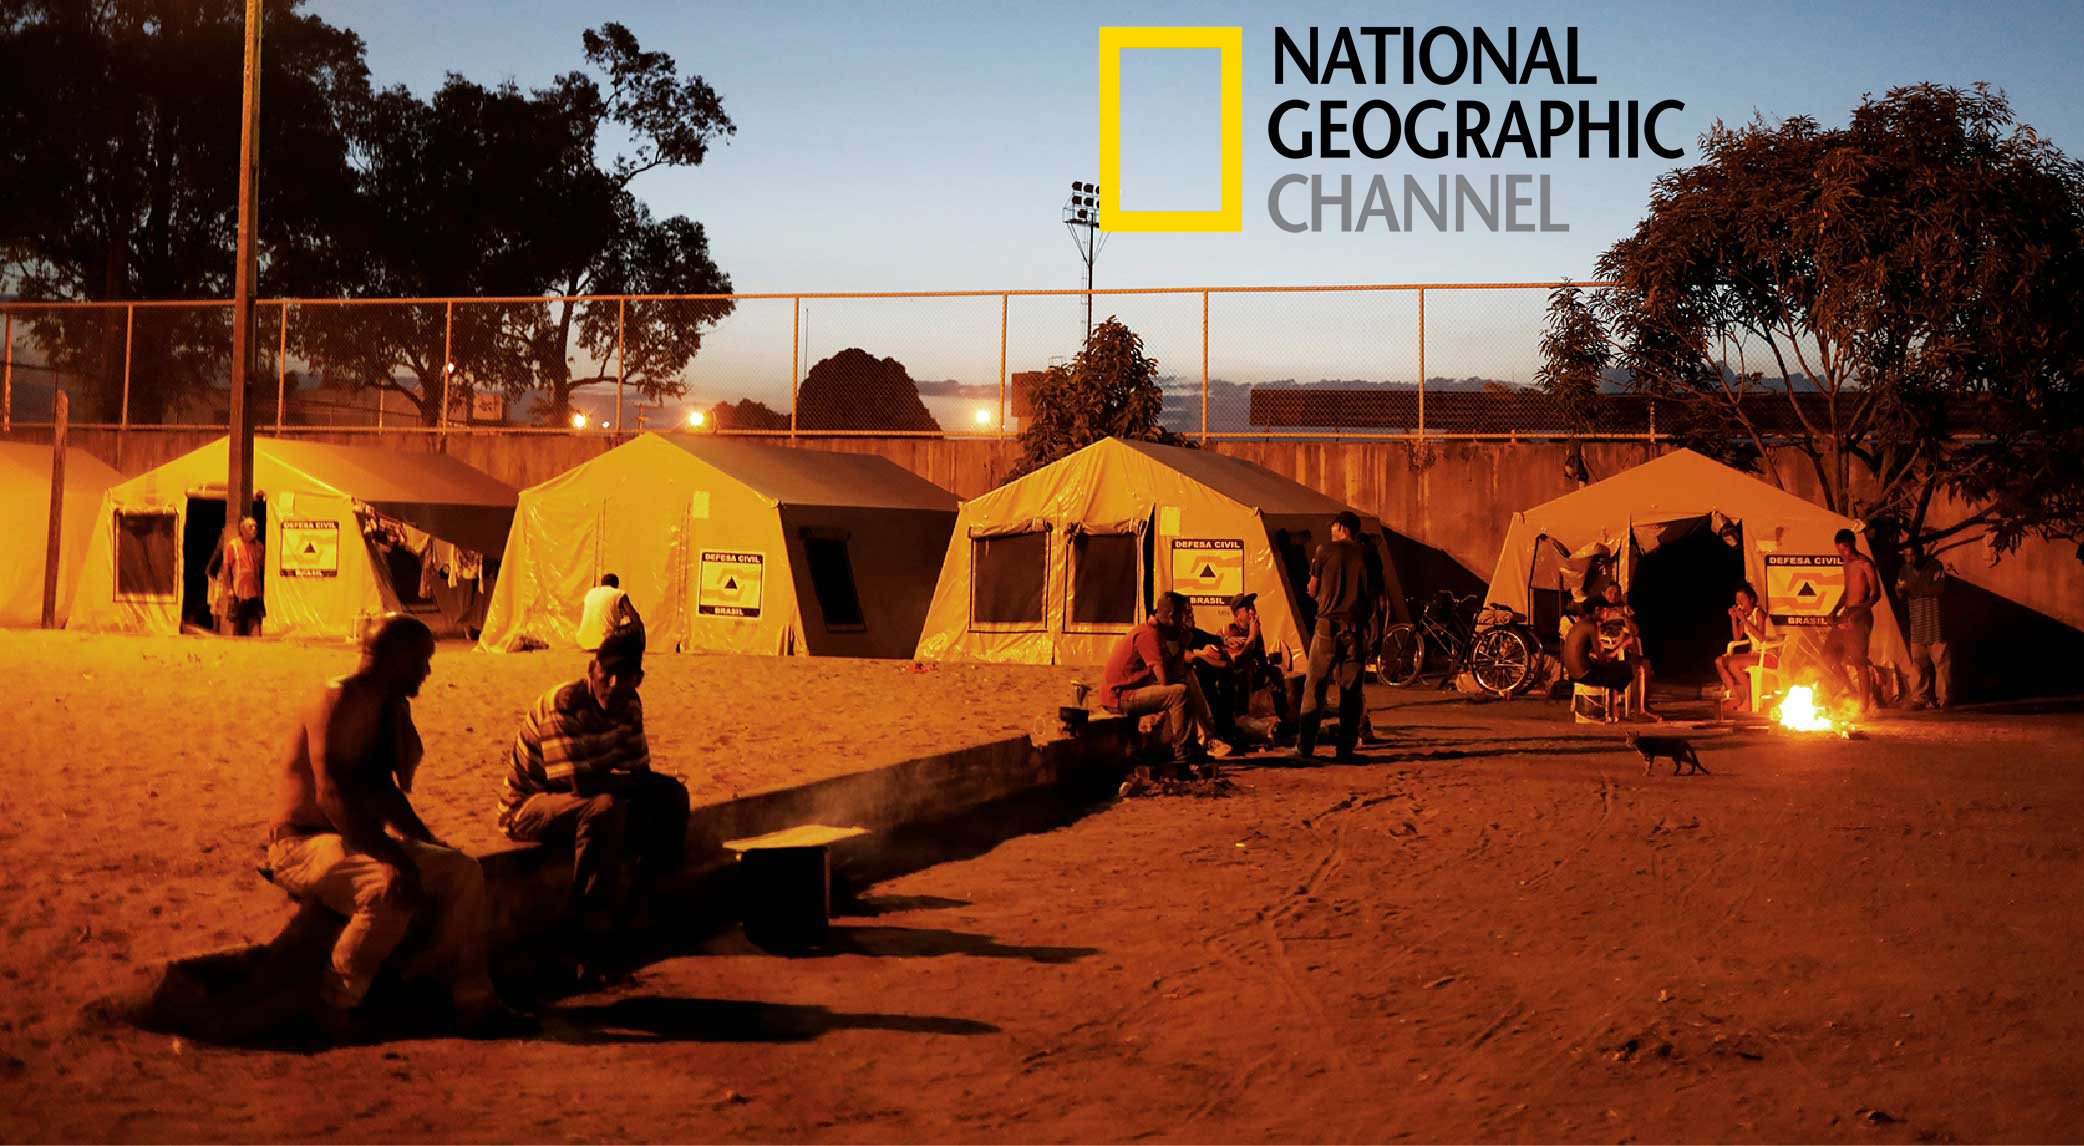 National Geographic  muestra la amarga vida de los venezolanos que huyen de la crisis en un estremecedor reportaje (VIDEO)